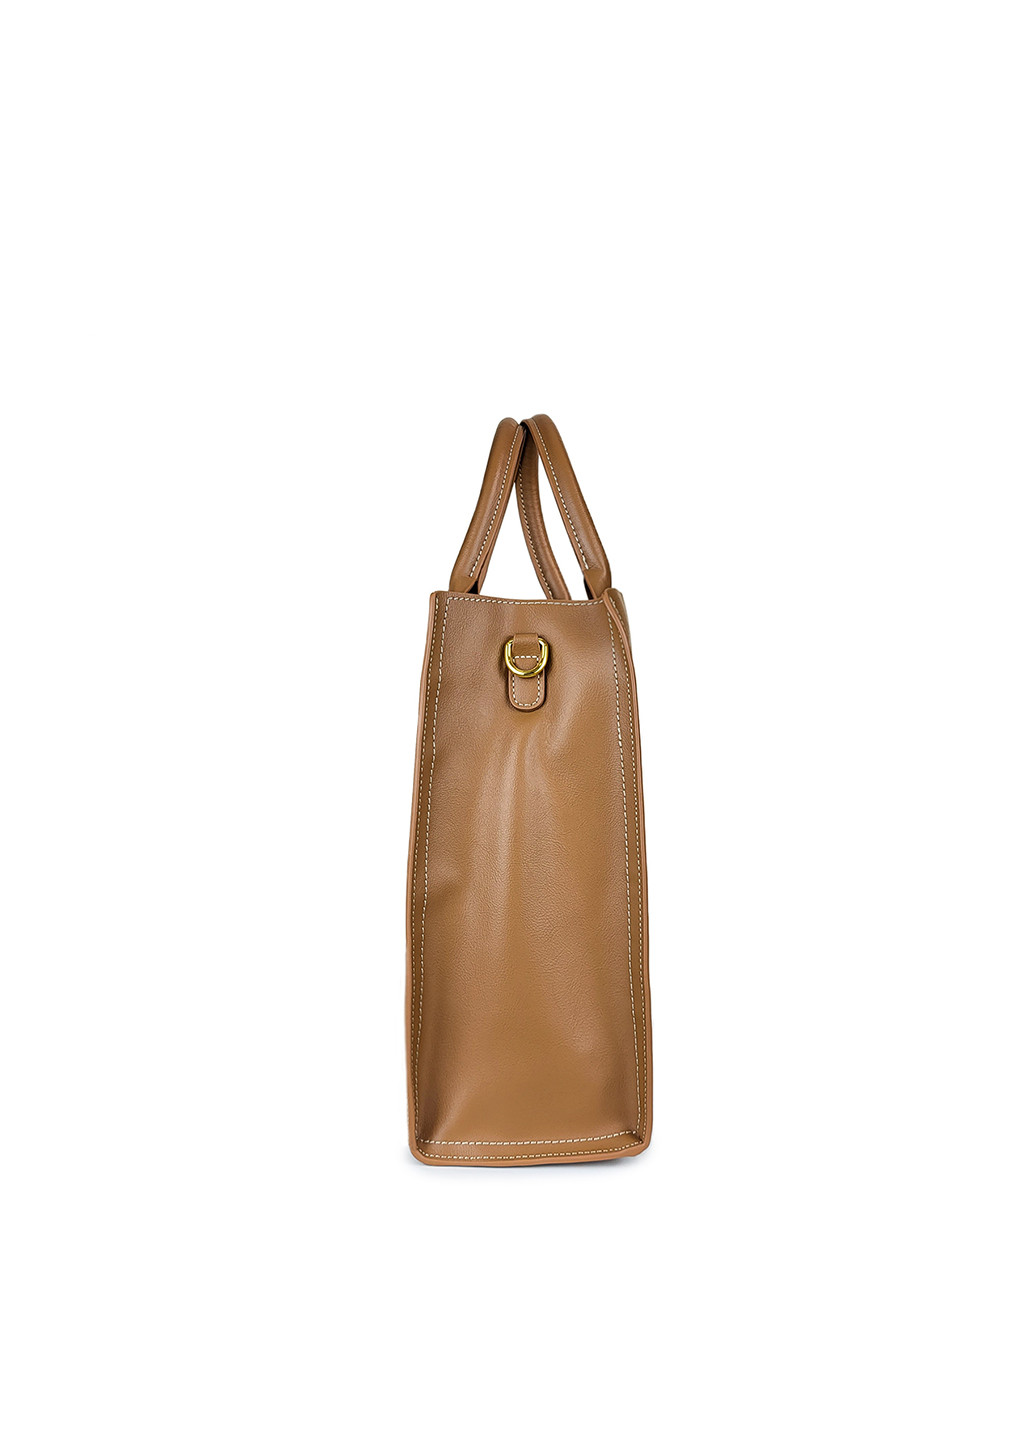 Женская кожаная коричневая сумочка большая, 9921 кор, Fashion (268120703)